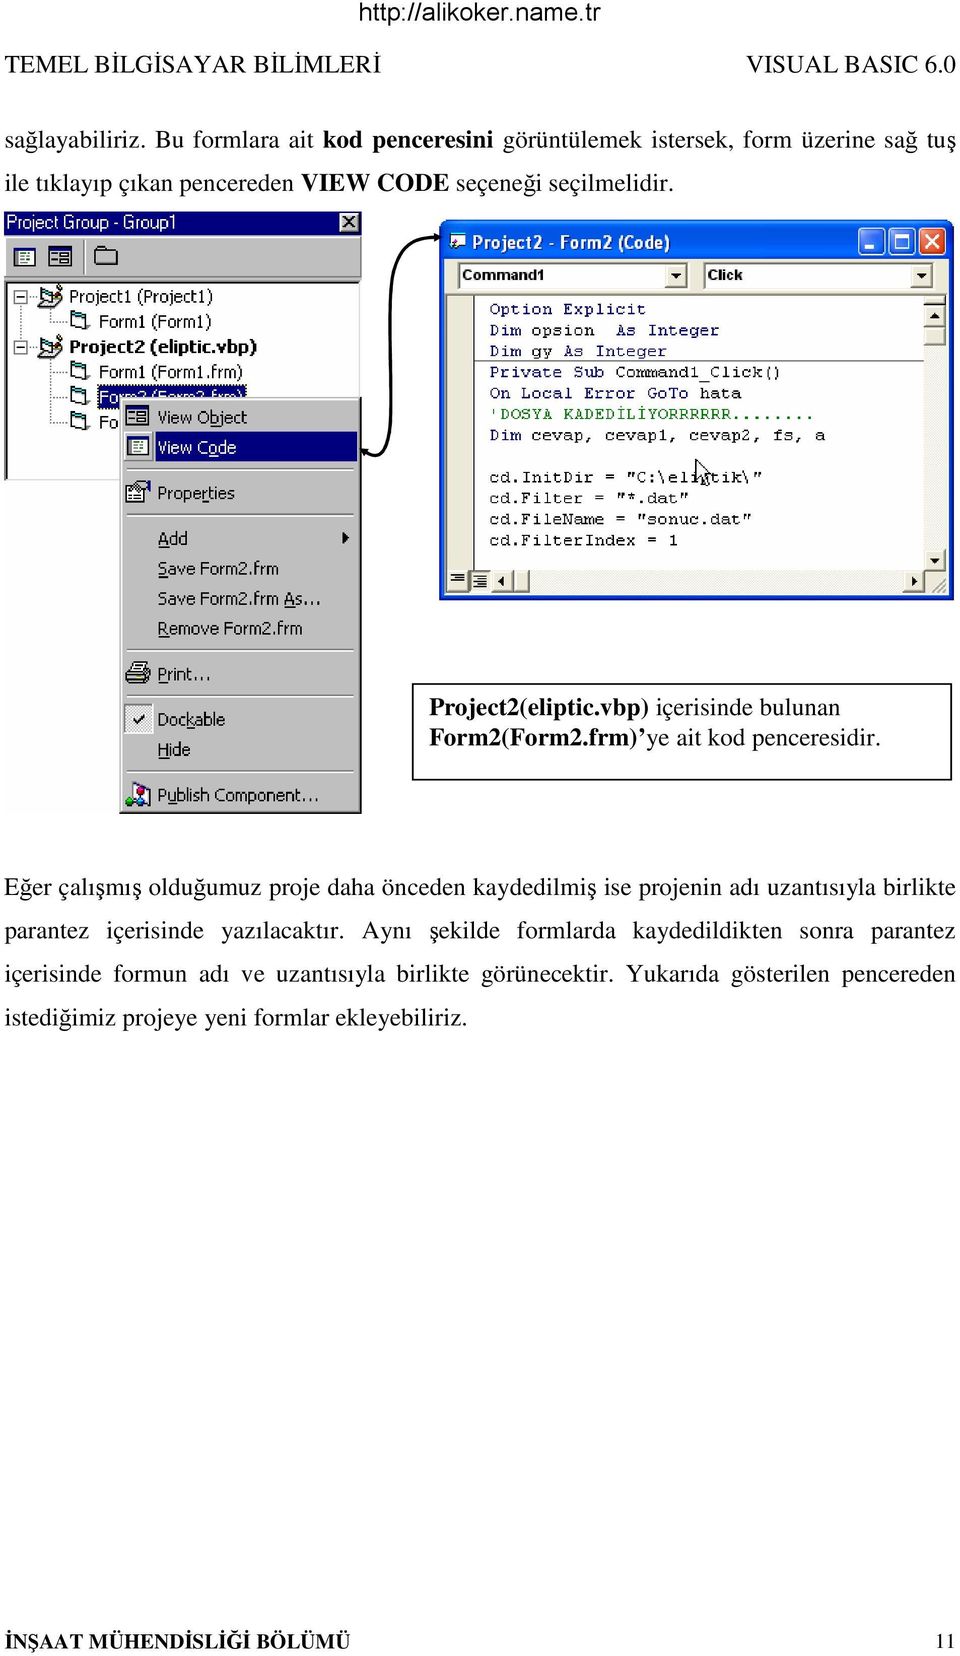 Project2(eliptic.vbp) içerisinde bulunan Form2(Form2.frm) ye ait kod penceresidir.